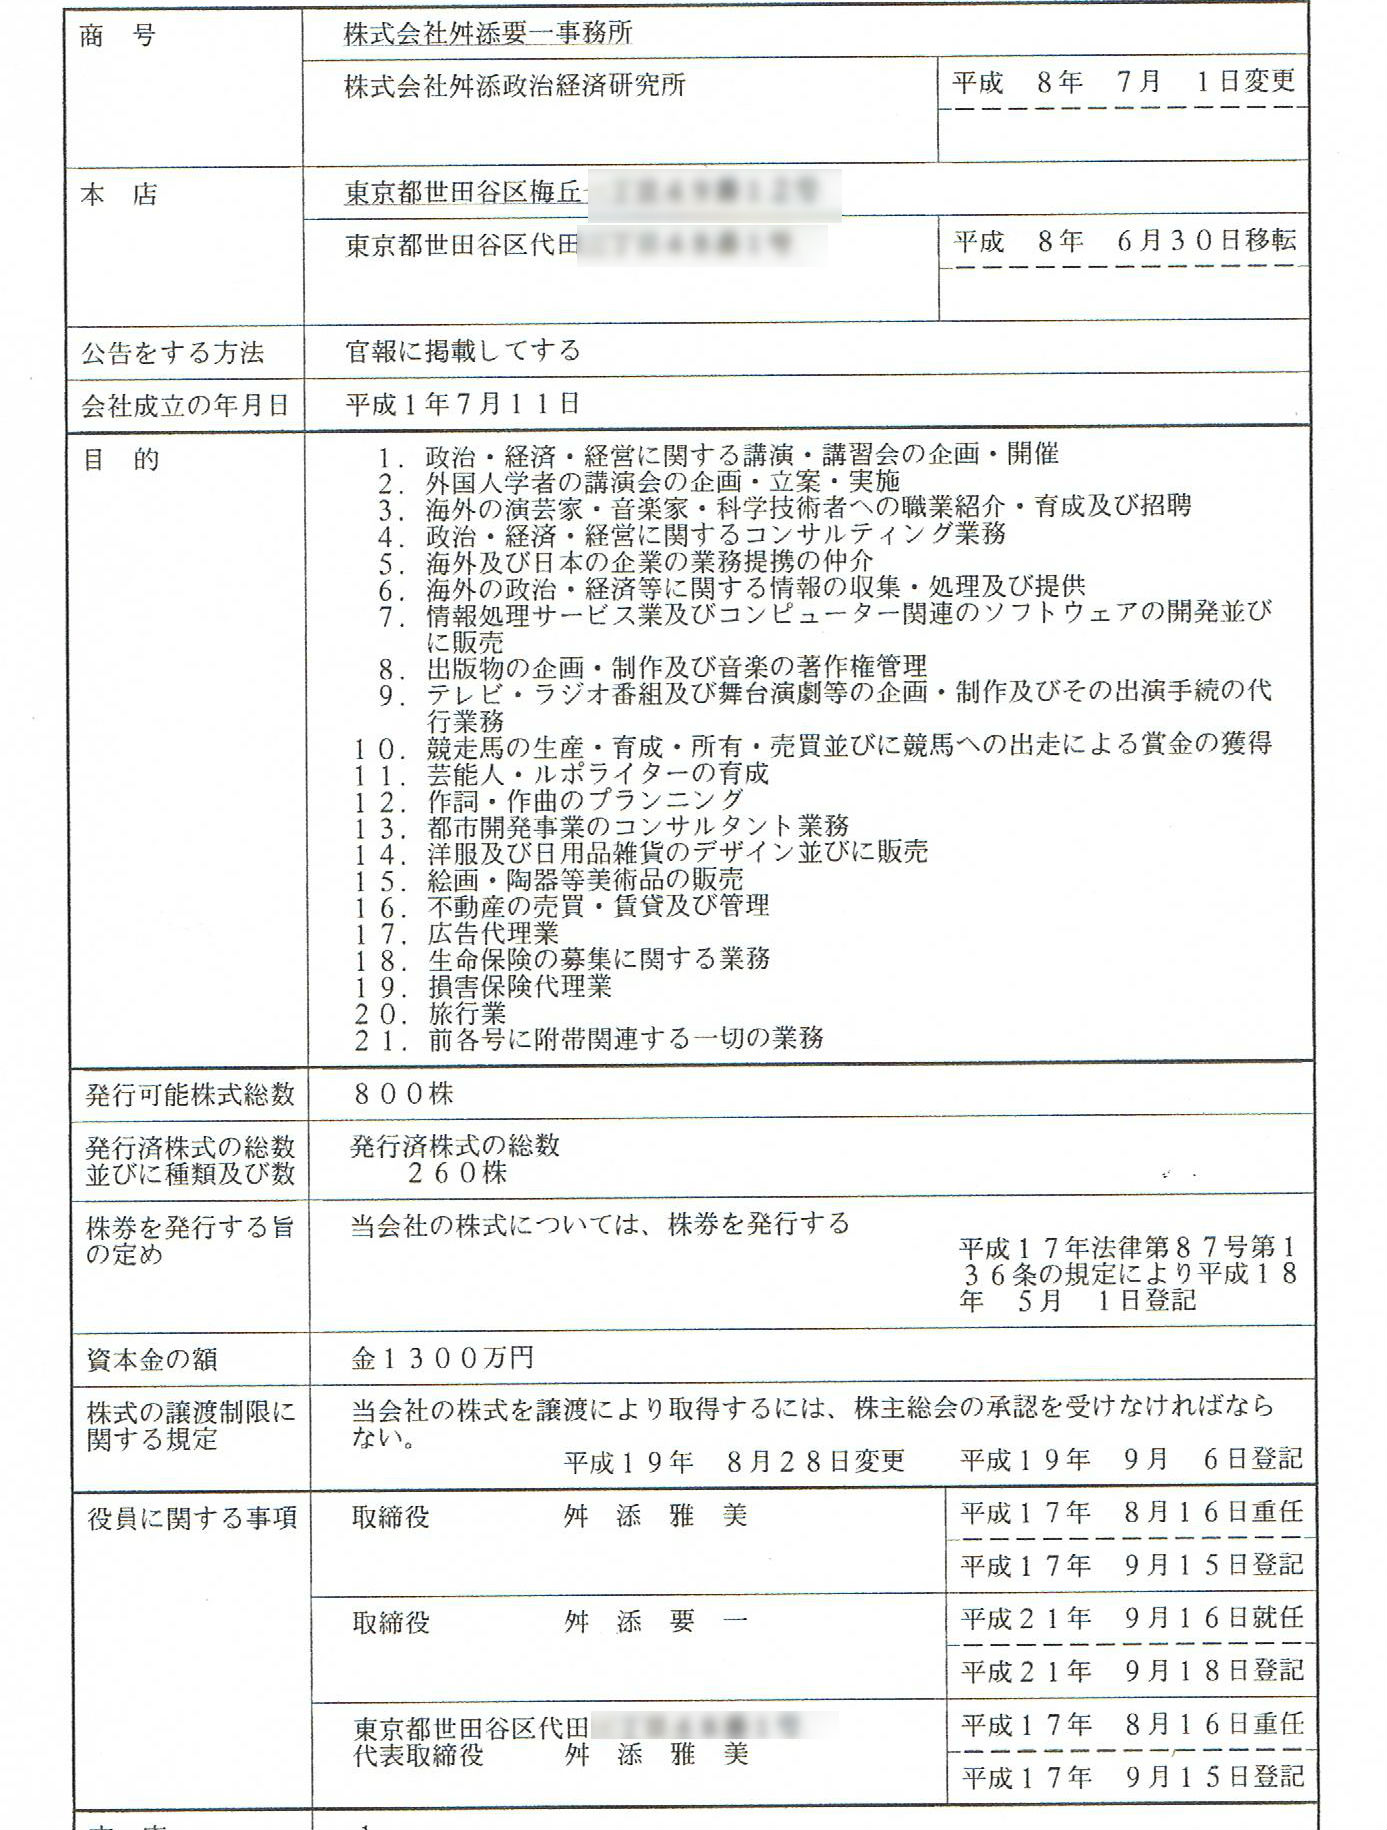 http://hunter-investigate.jp/news/2014/04/25/%E4%BC%9A%E7%A4%BE%E7%99